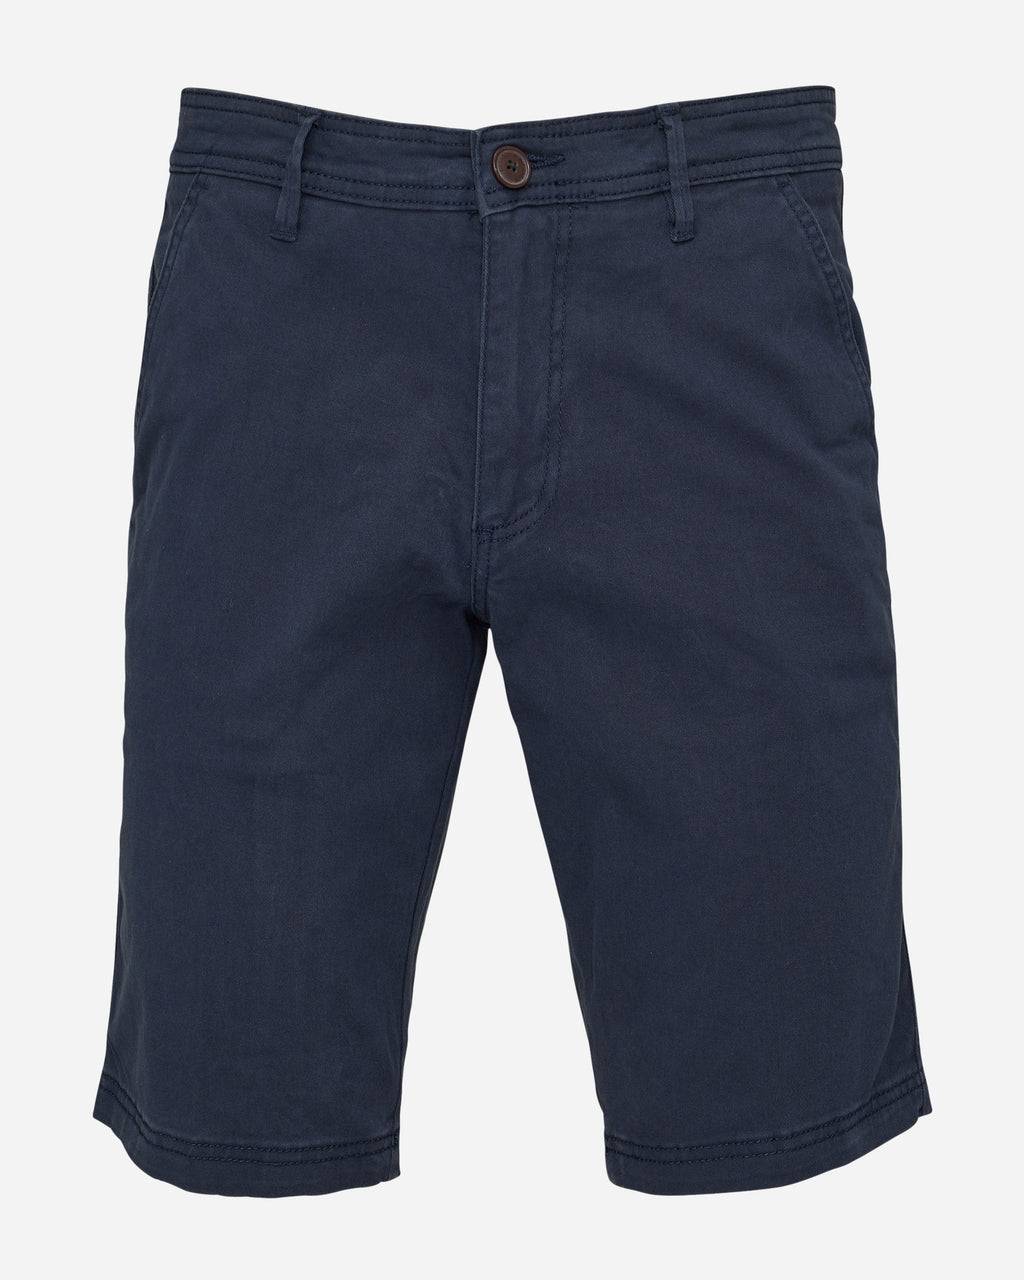 Men's "Carrum" Chino Shorts